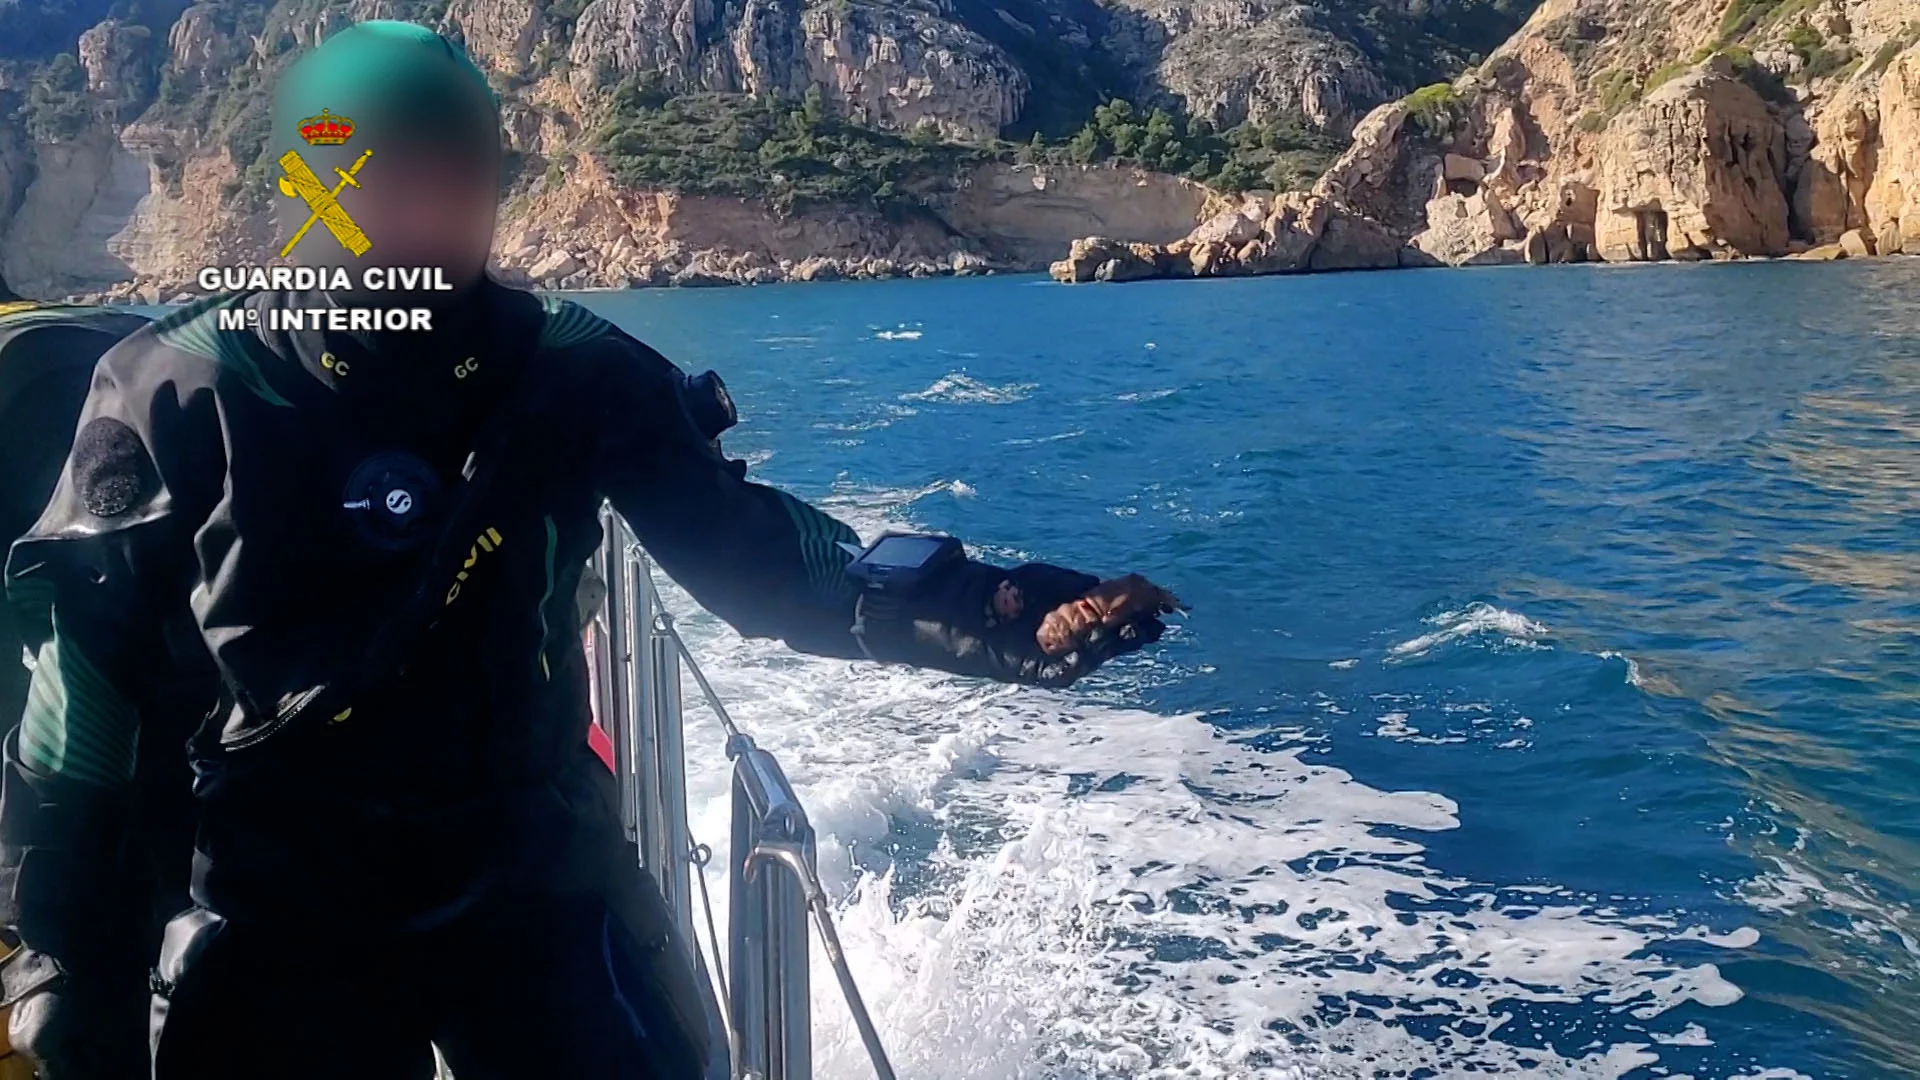 La Guardia Civil devuelve al mar una cigarra del mediteráneo encontrada entre las redes